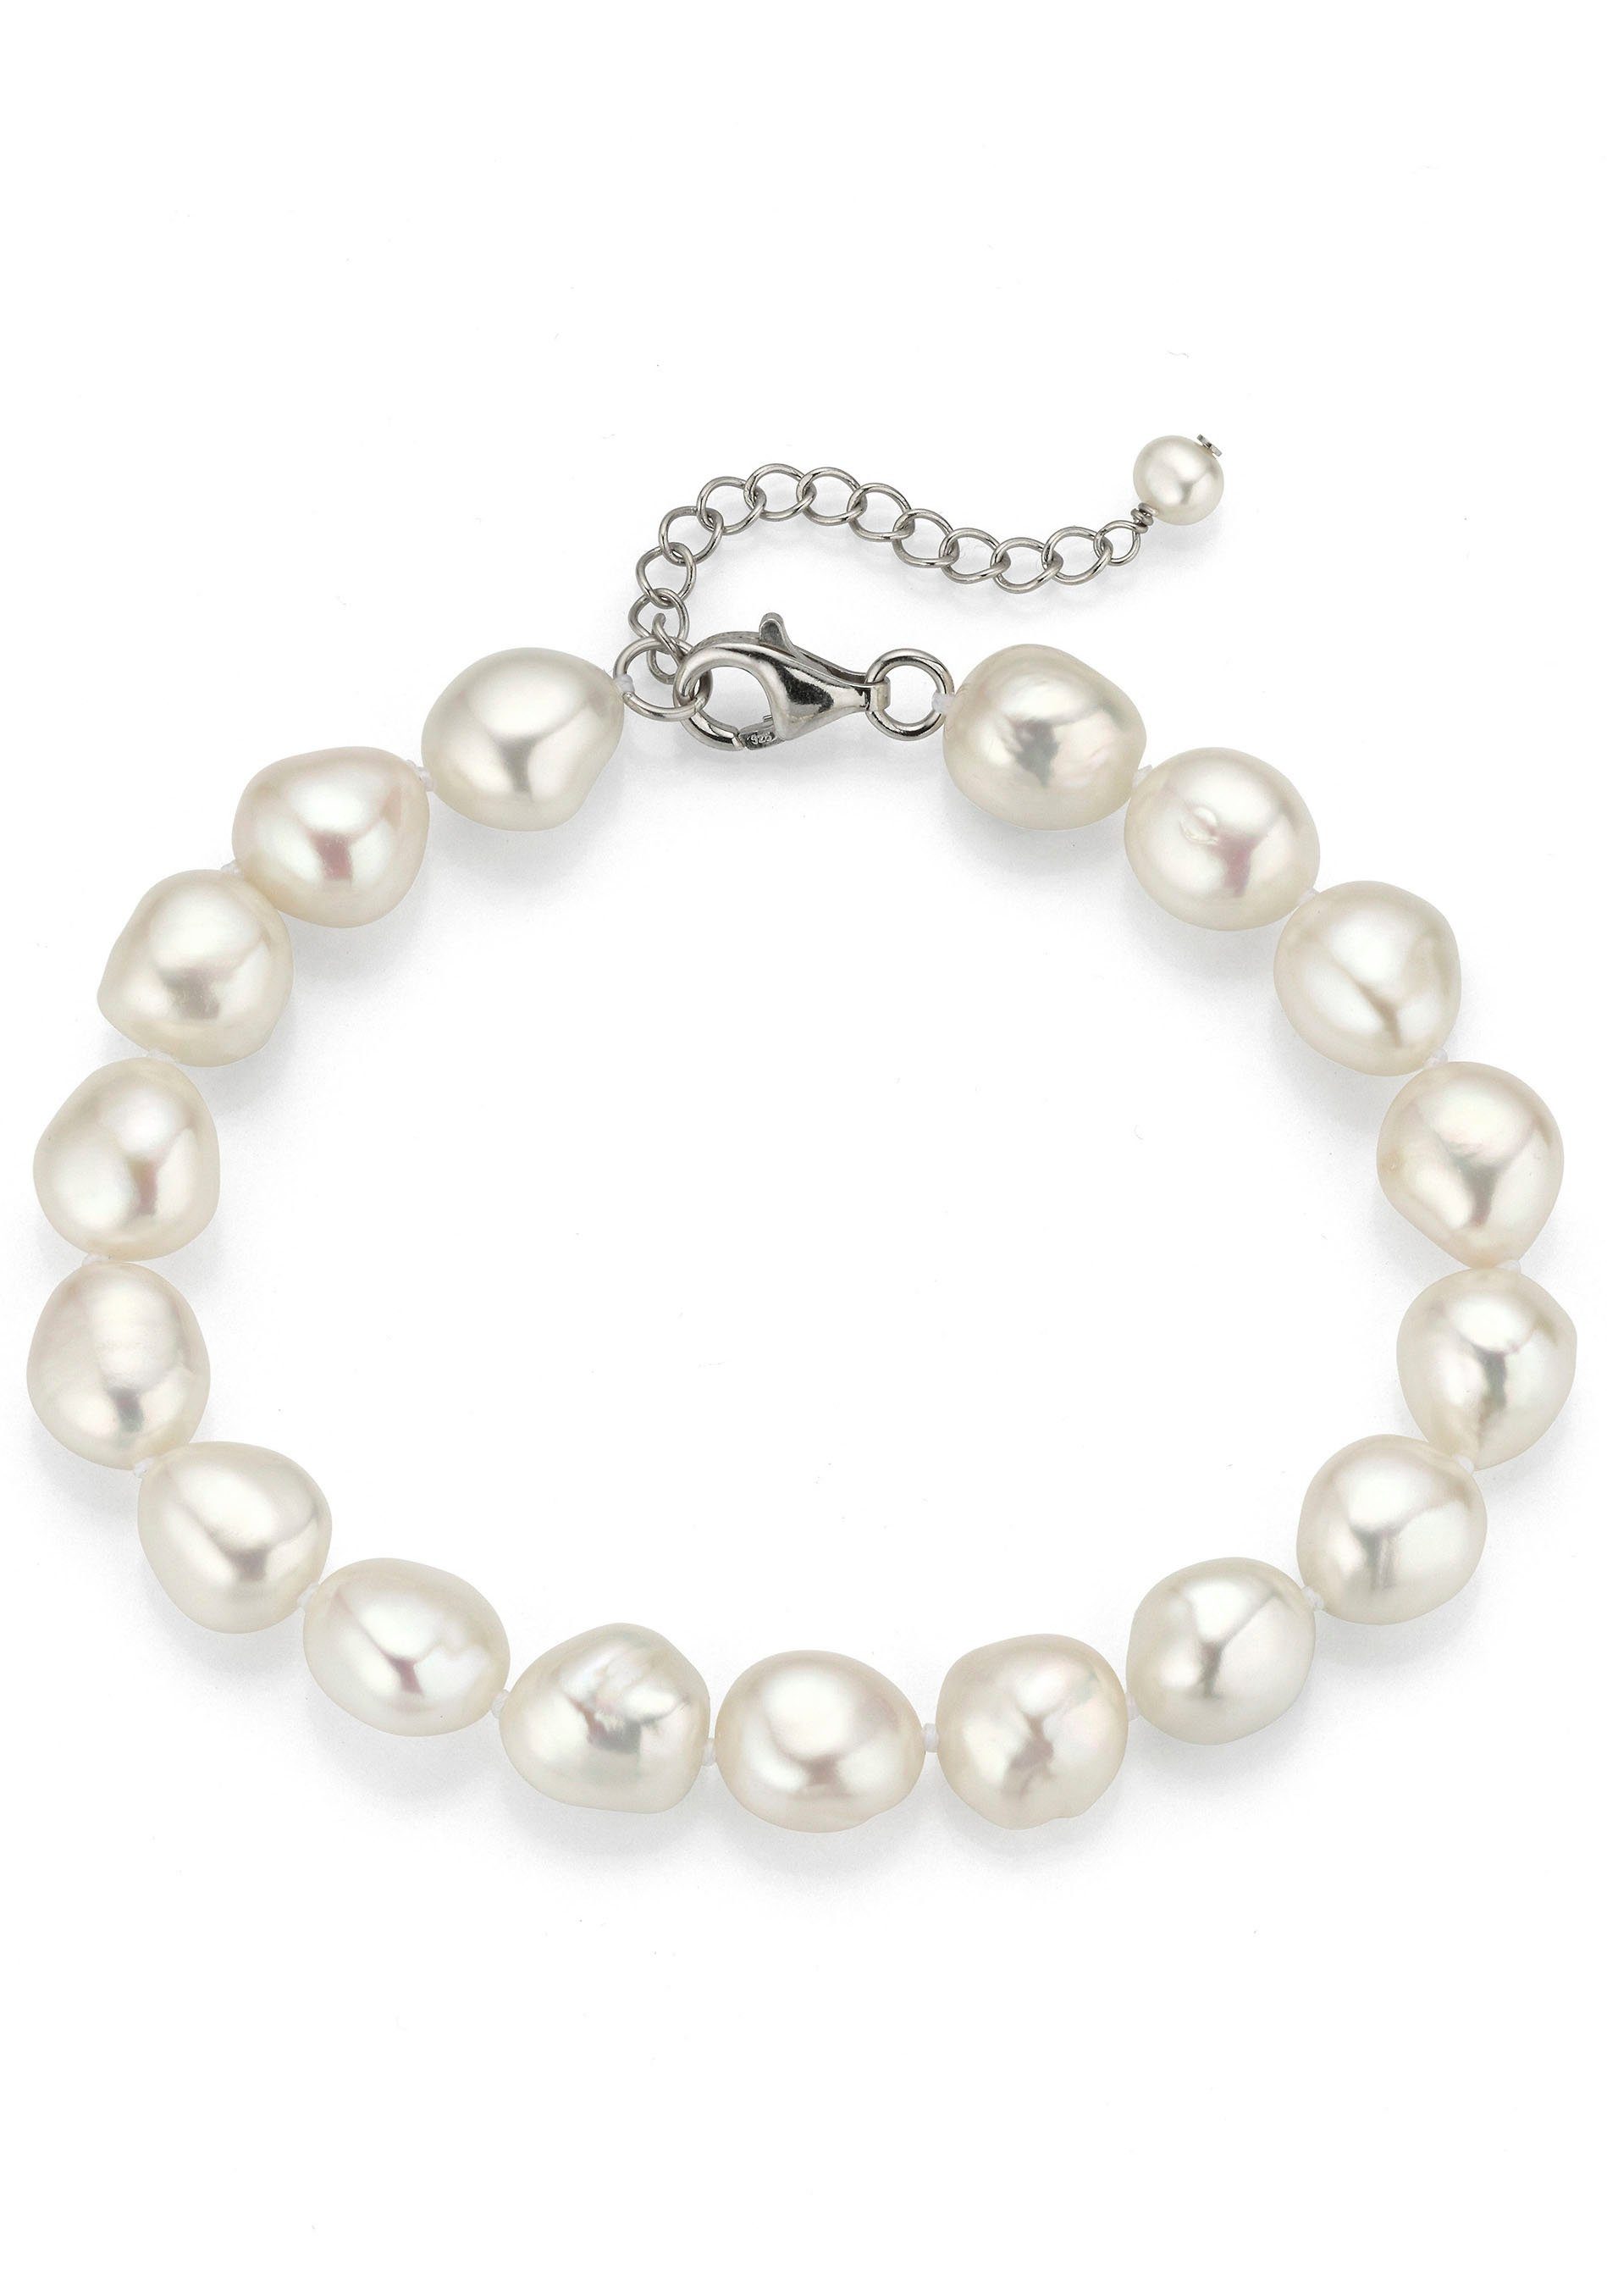 Firetti Perlenarmband Schmuck Geschenk Armschmuck Armkette Perle, zu Kleid, Shirt, Jeans, Sneaker! Anlass Geburtstag Weihnachten | Perlenarmbänder